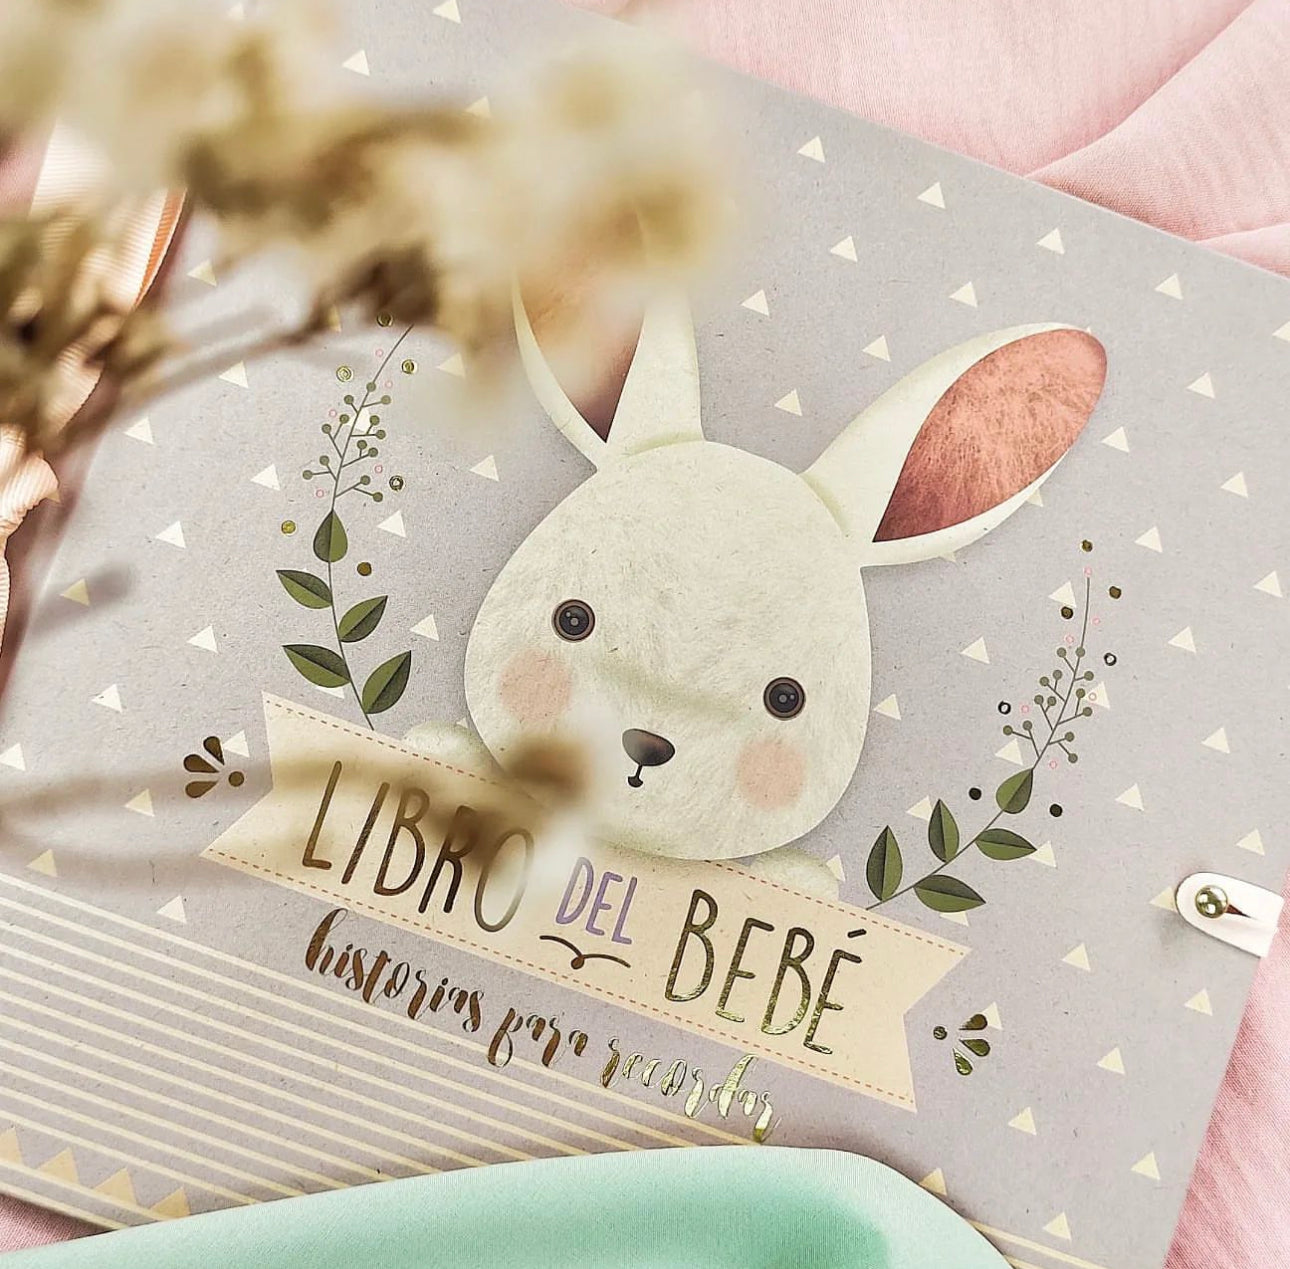 Libro del bebé Conejo Rosa